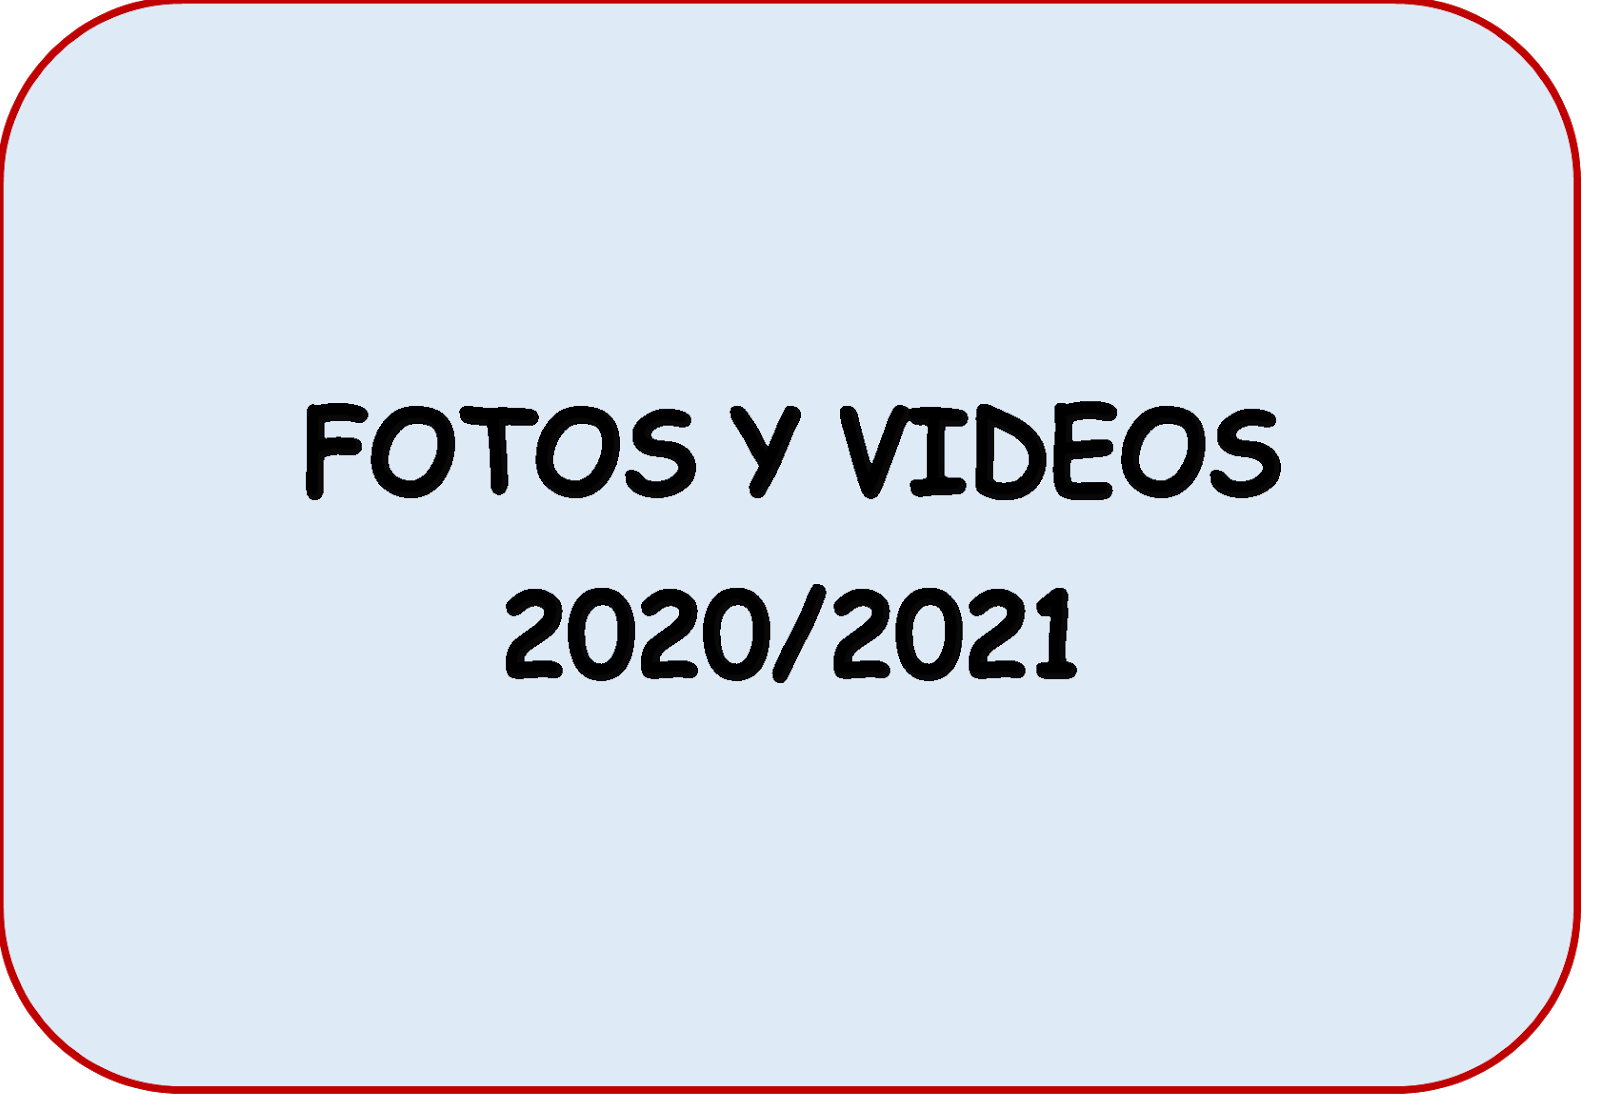 Fotos y videos 2020/2021